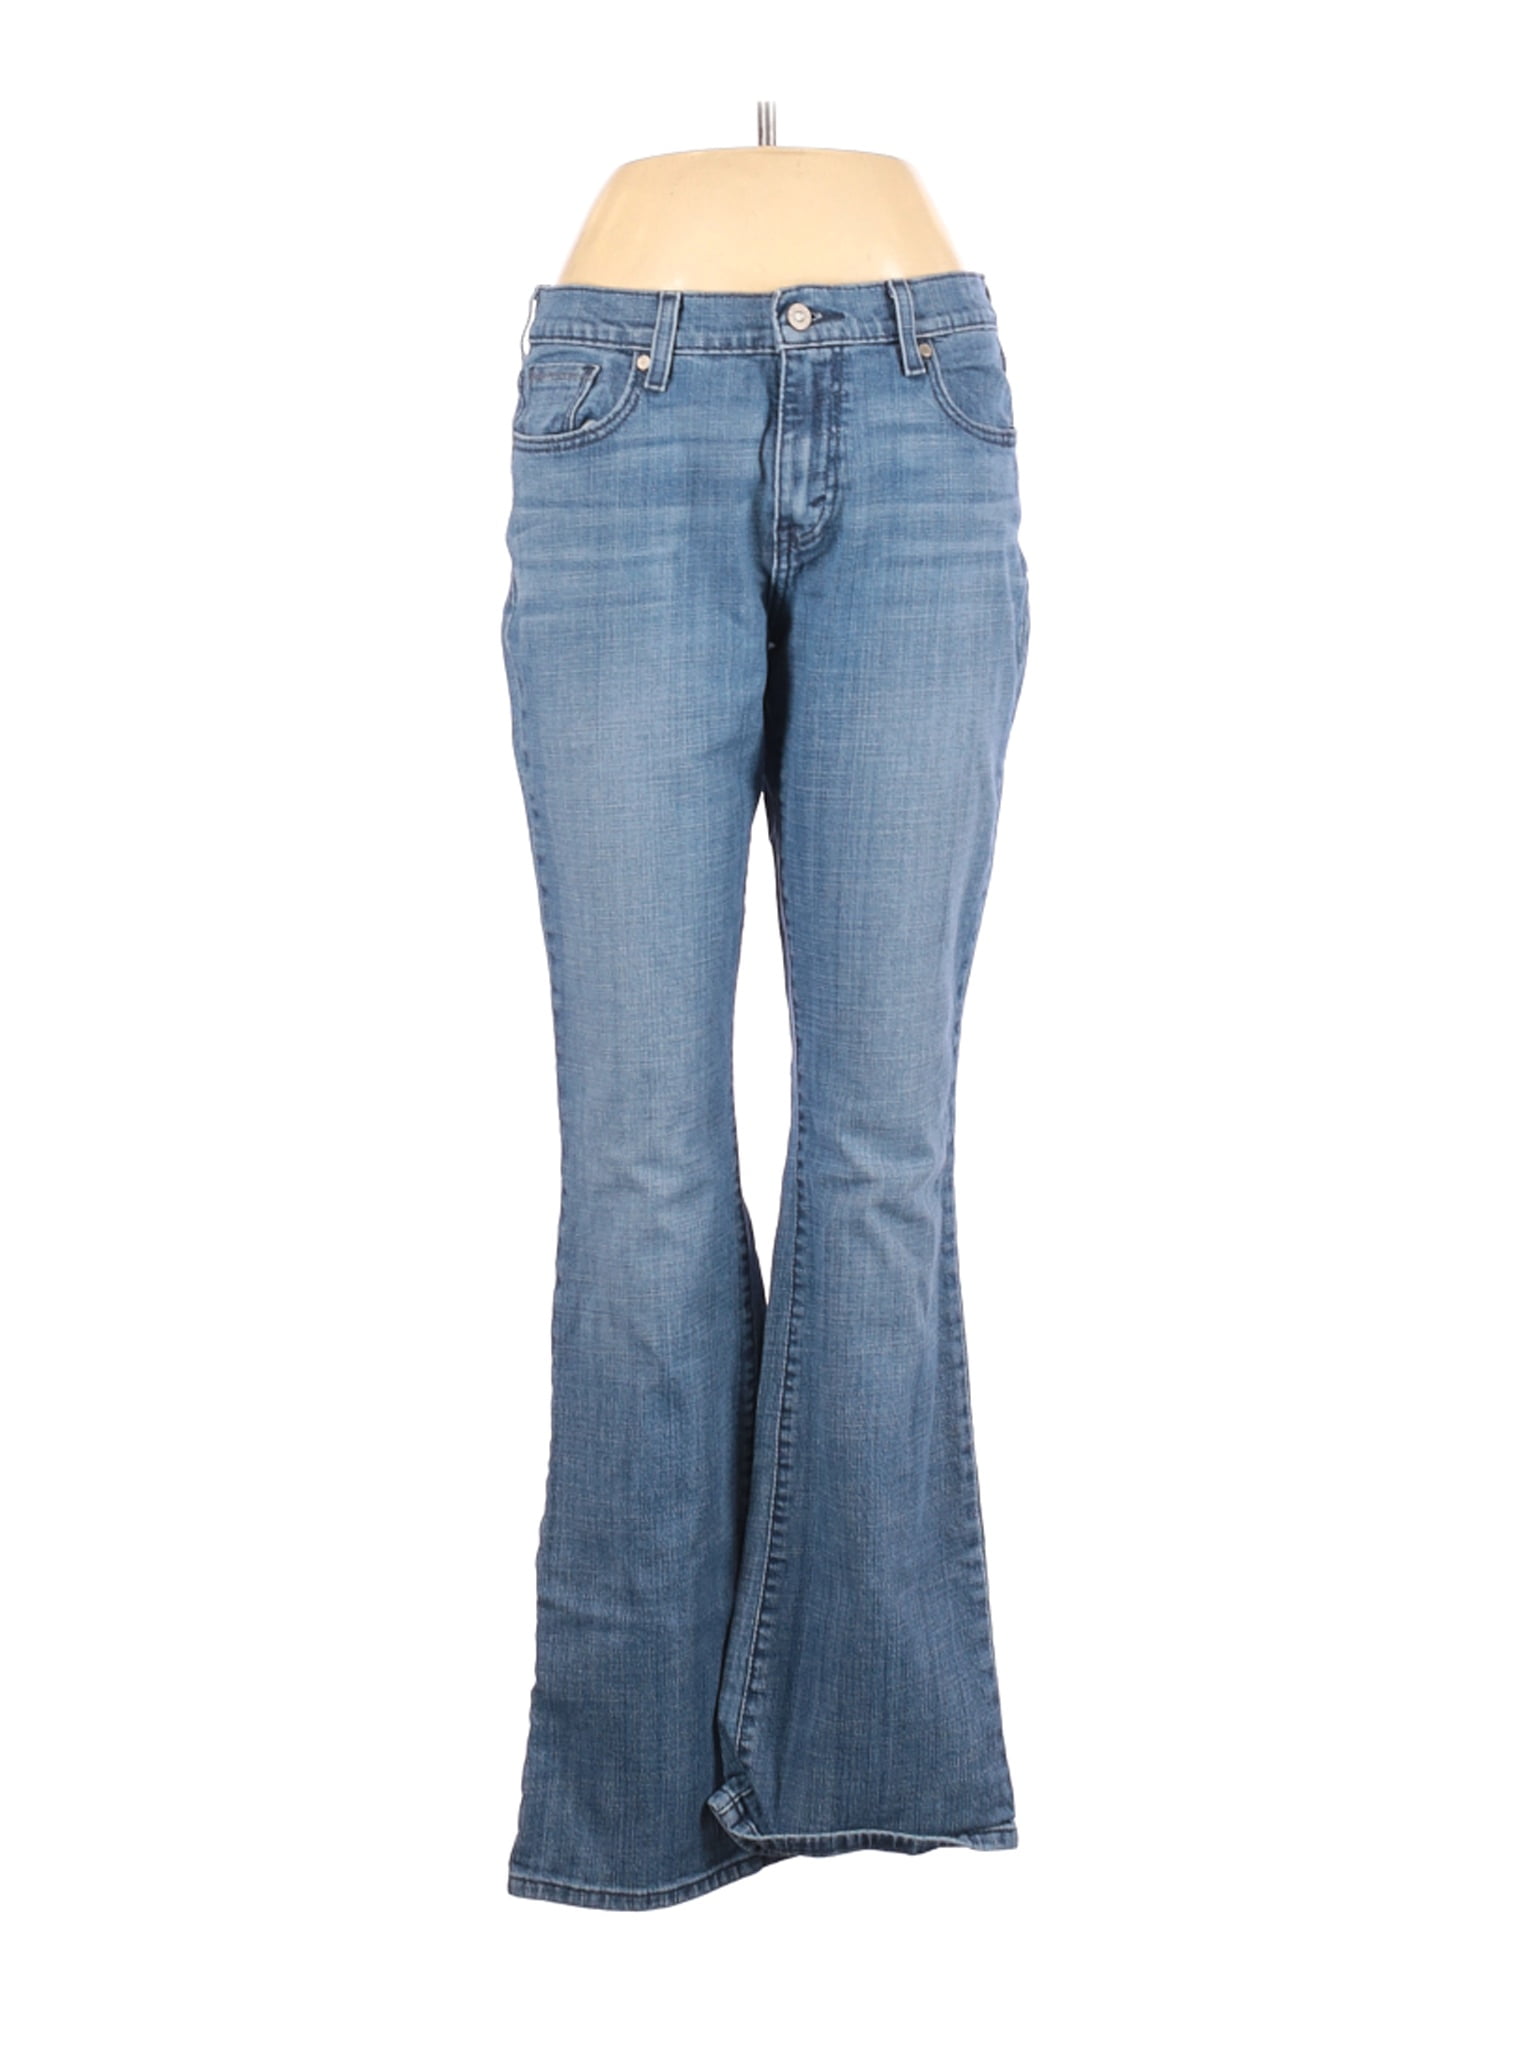 ladies levi jeans size 10